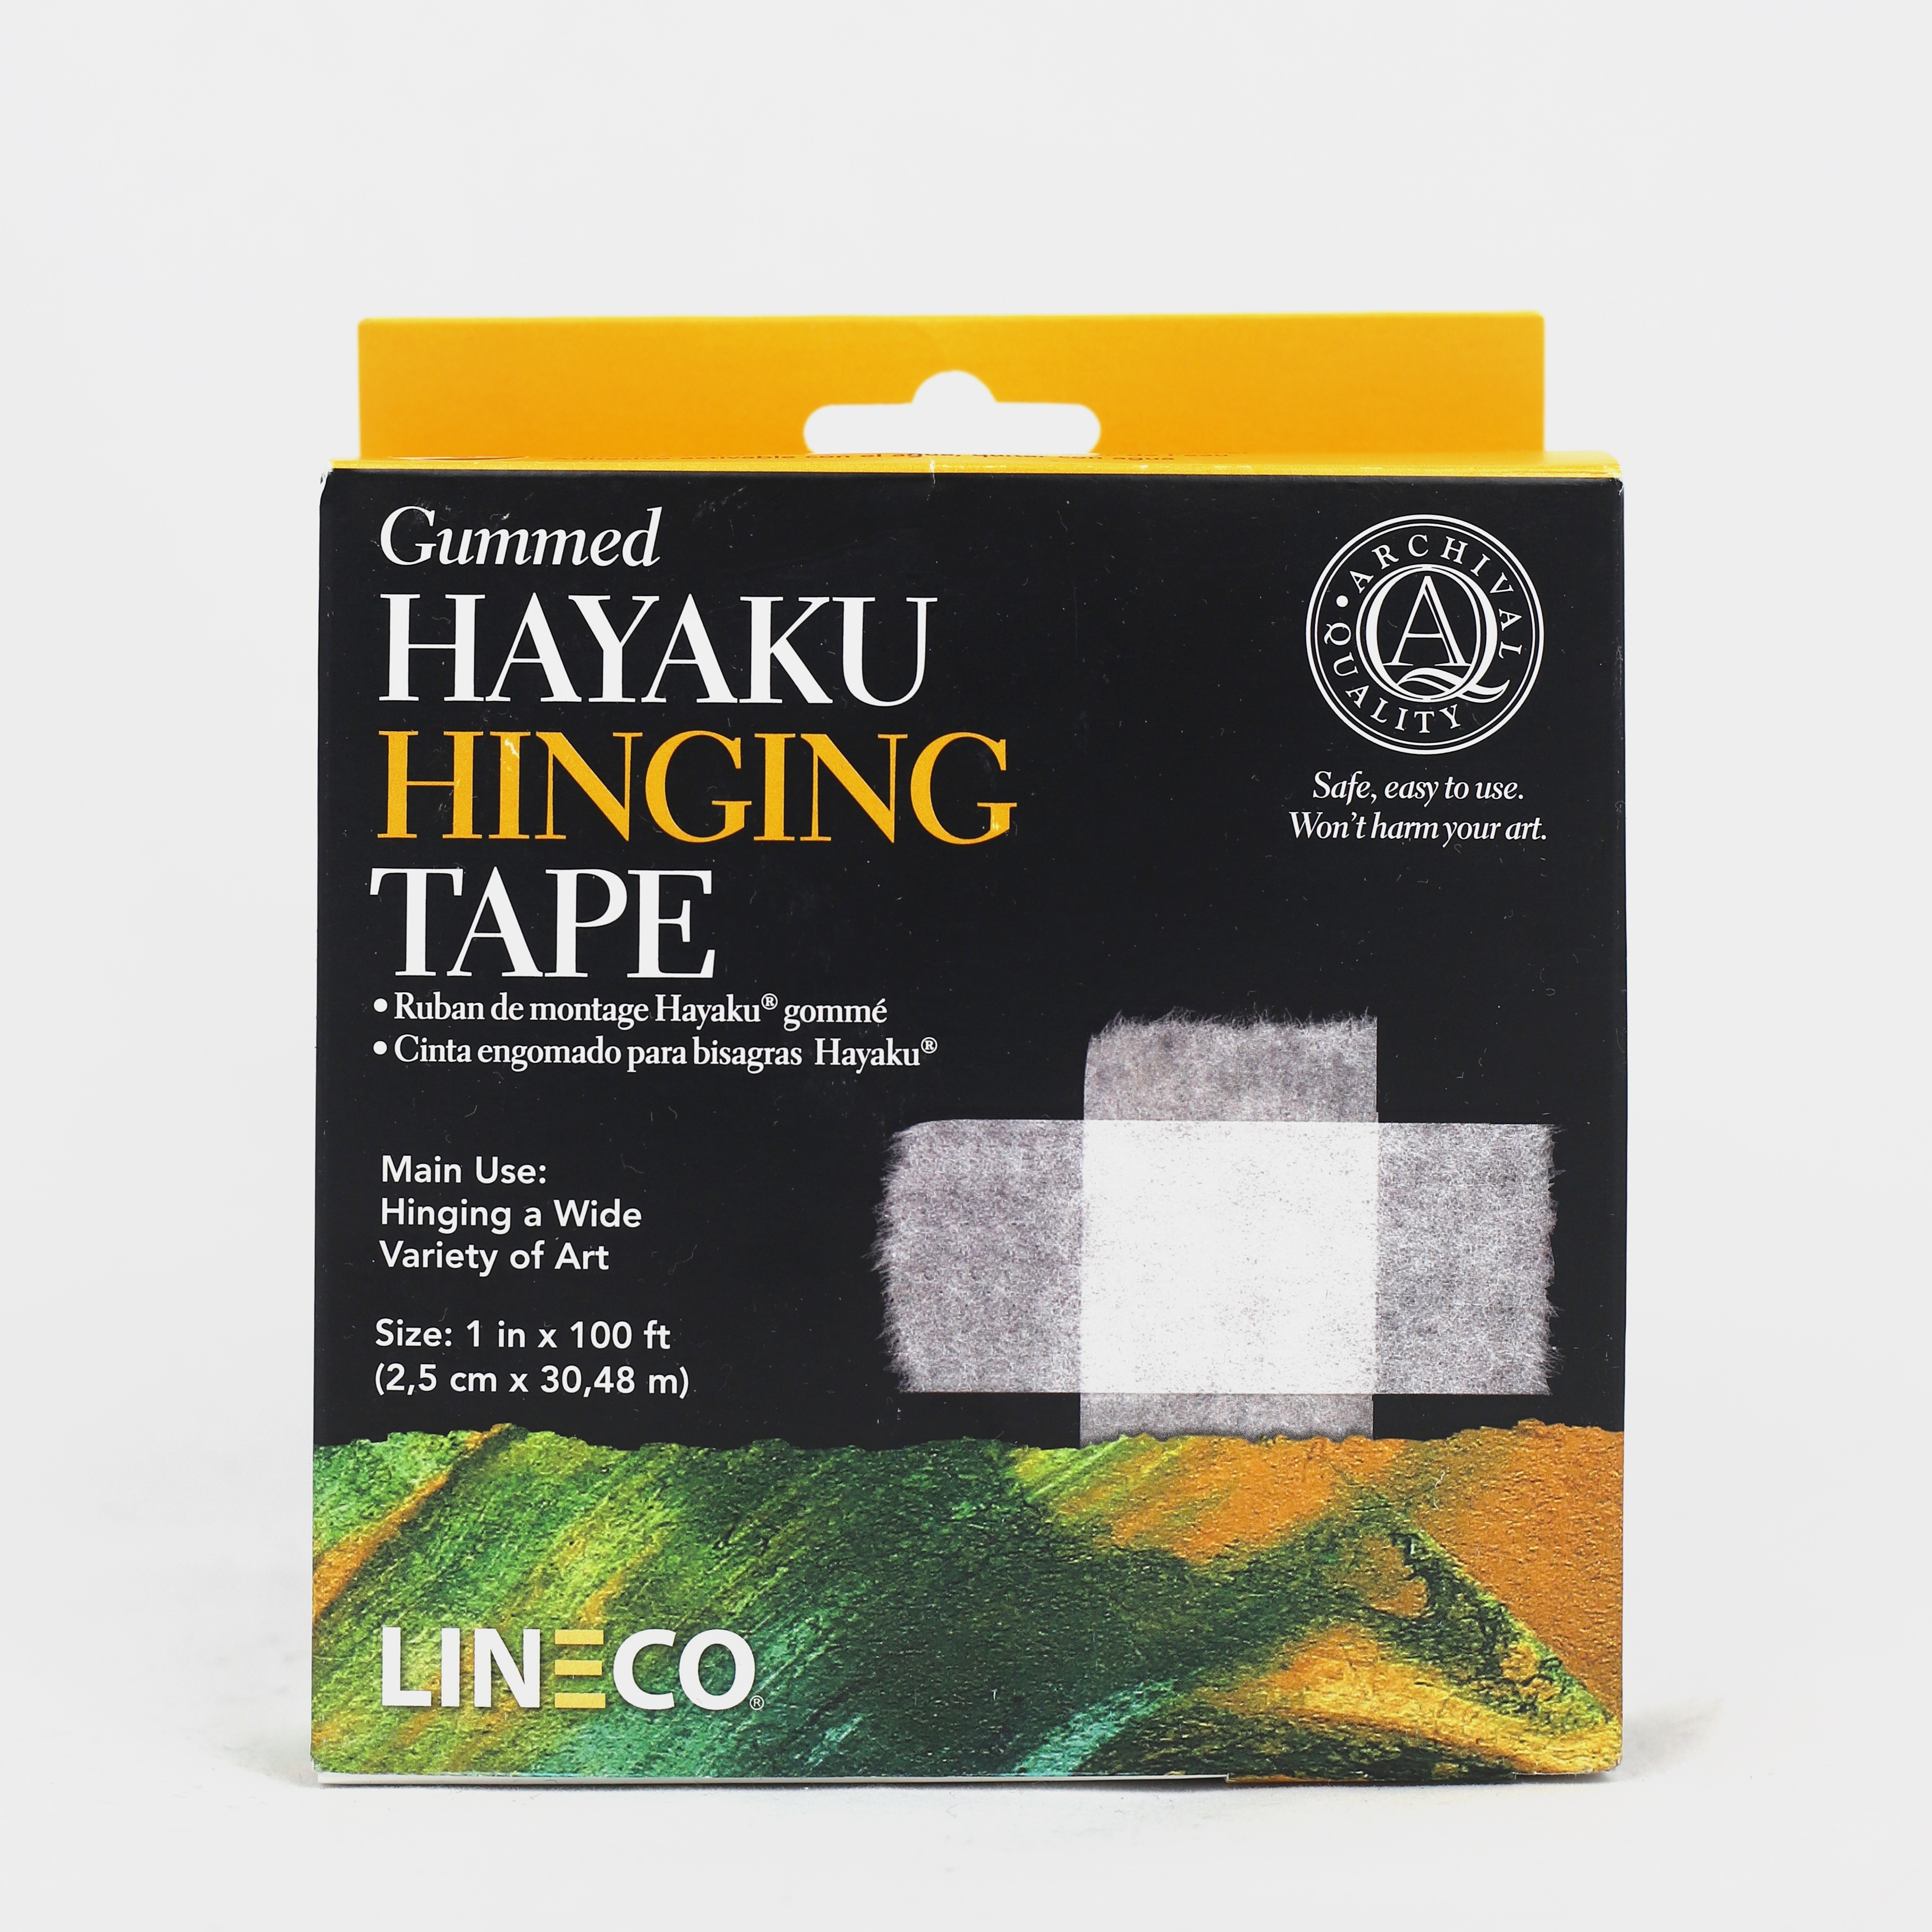 Gummed Hayaku Hinging tape